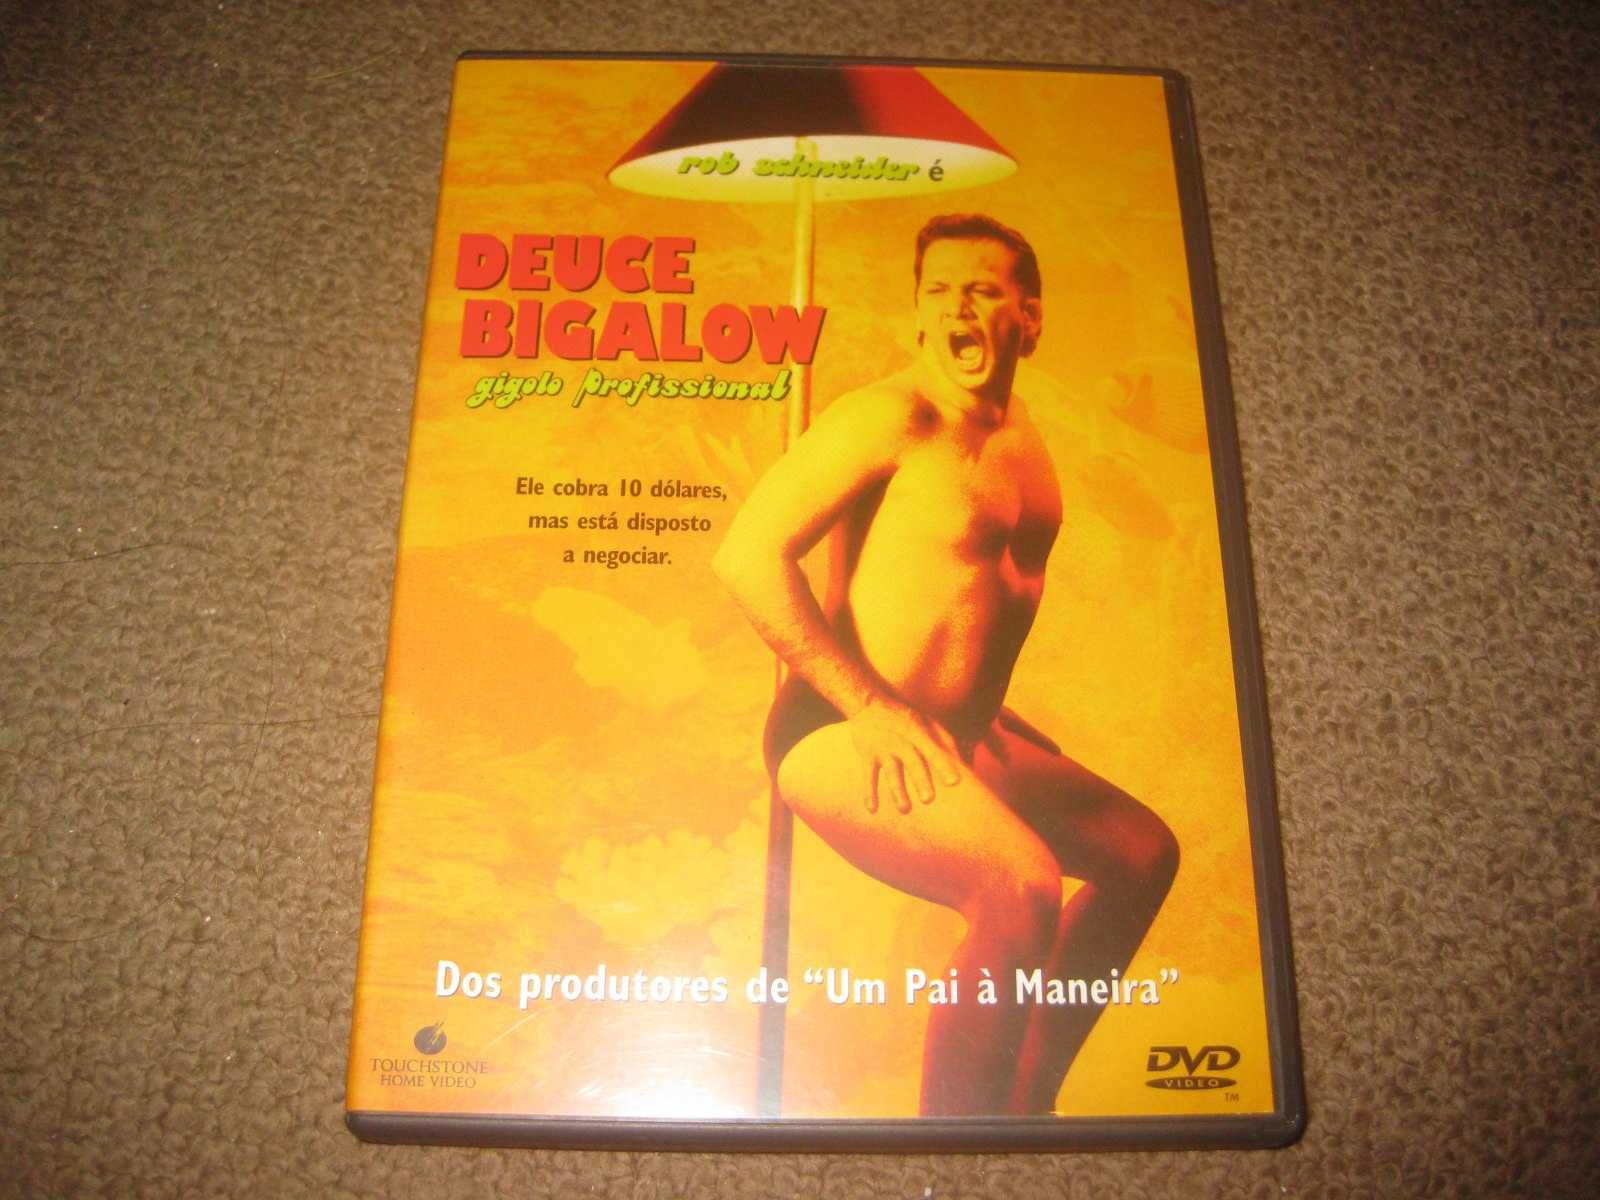 DVD "Deuce Bigalow: Gigolo Profissional" com Rob Schneider